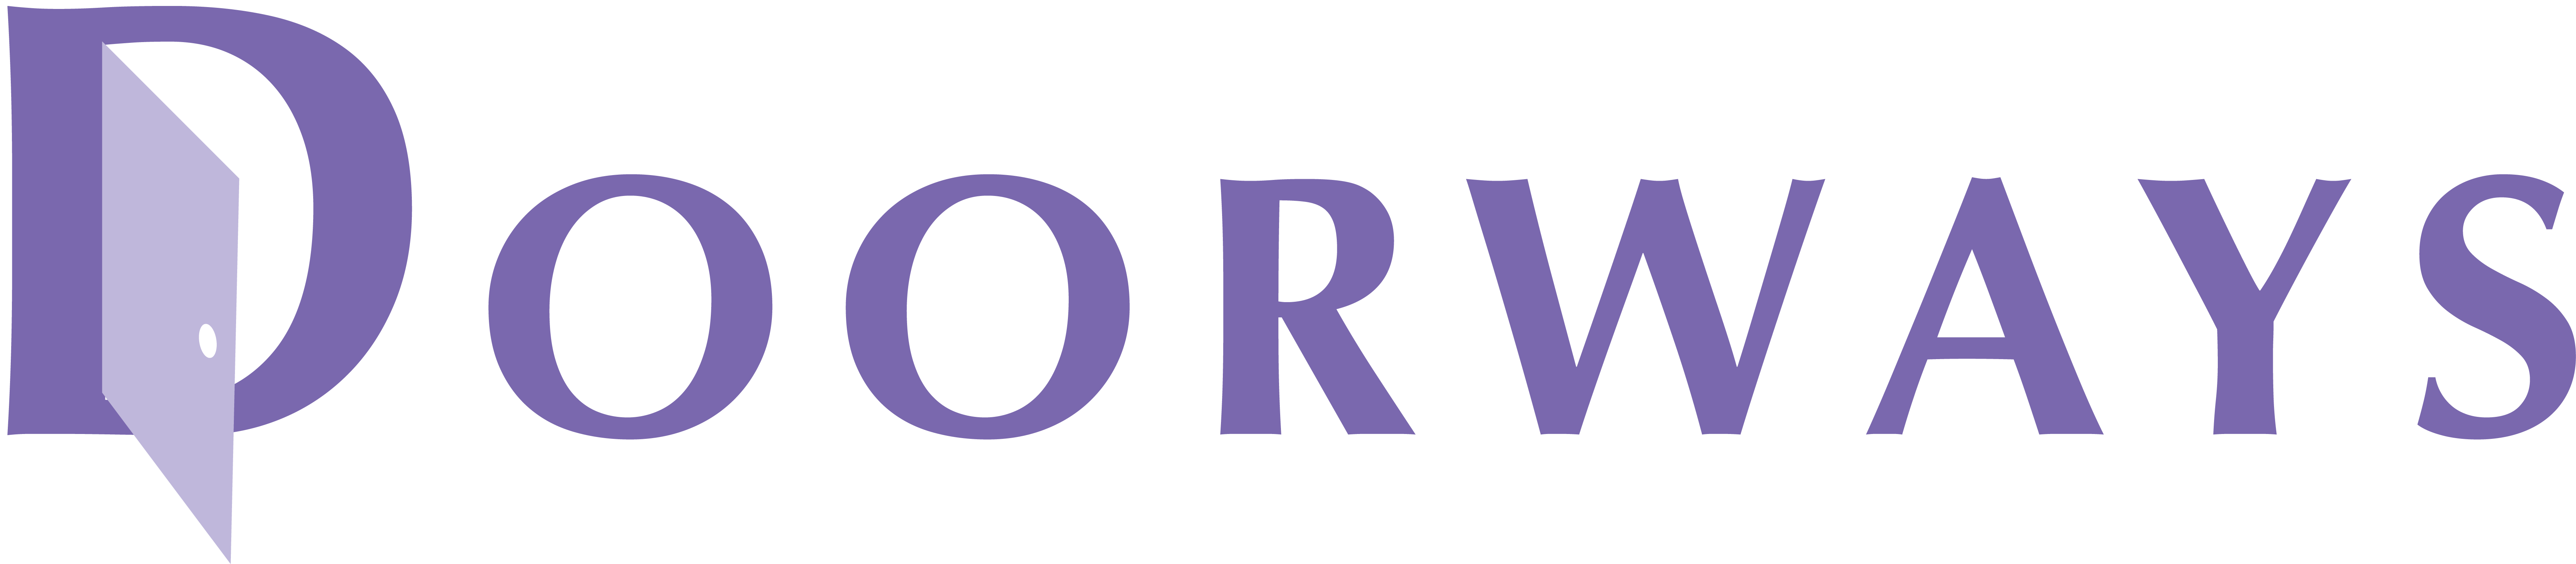 Doorways-Logo